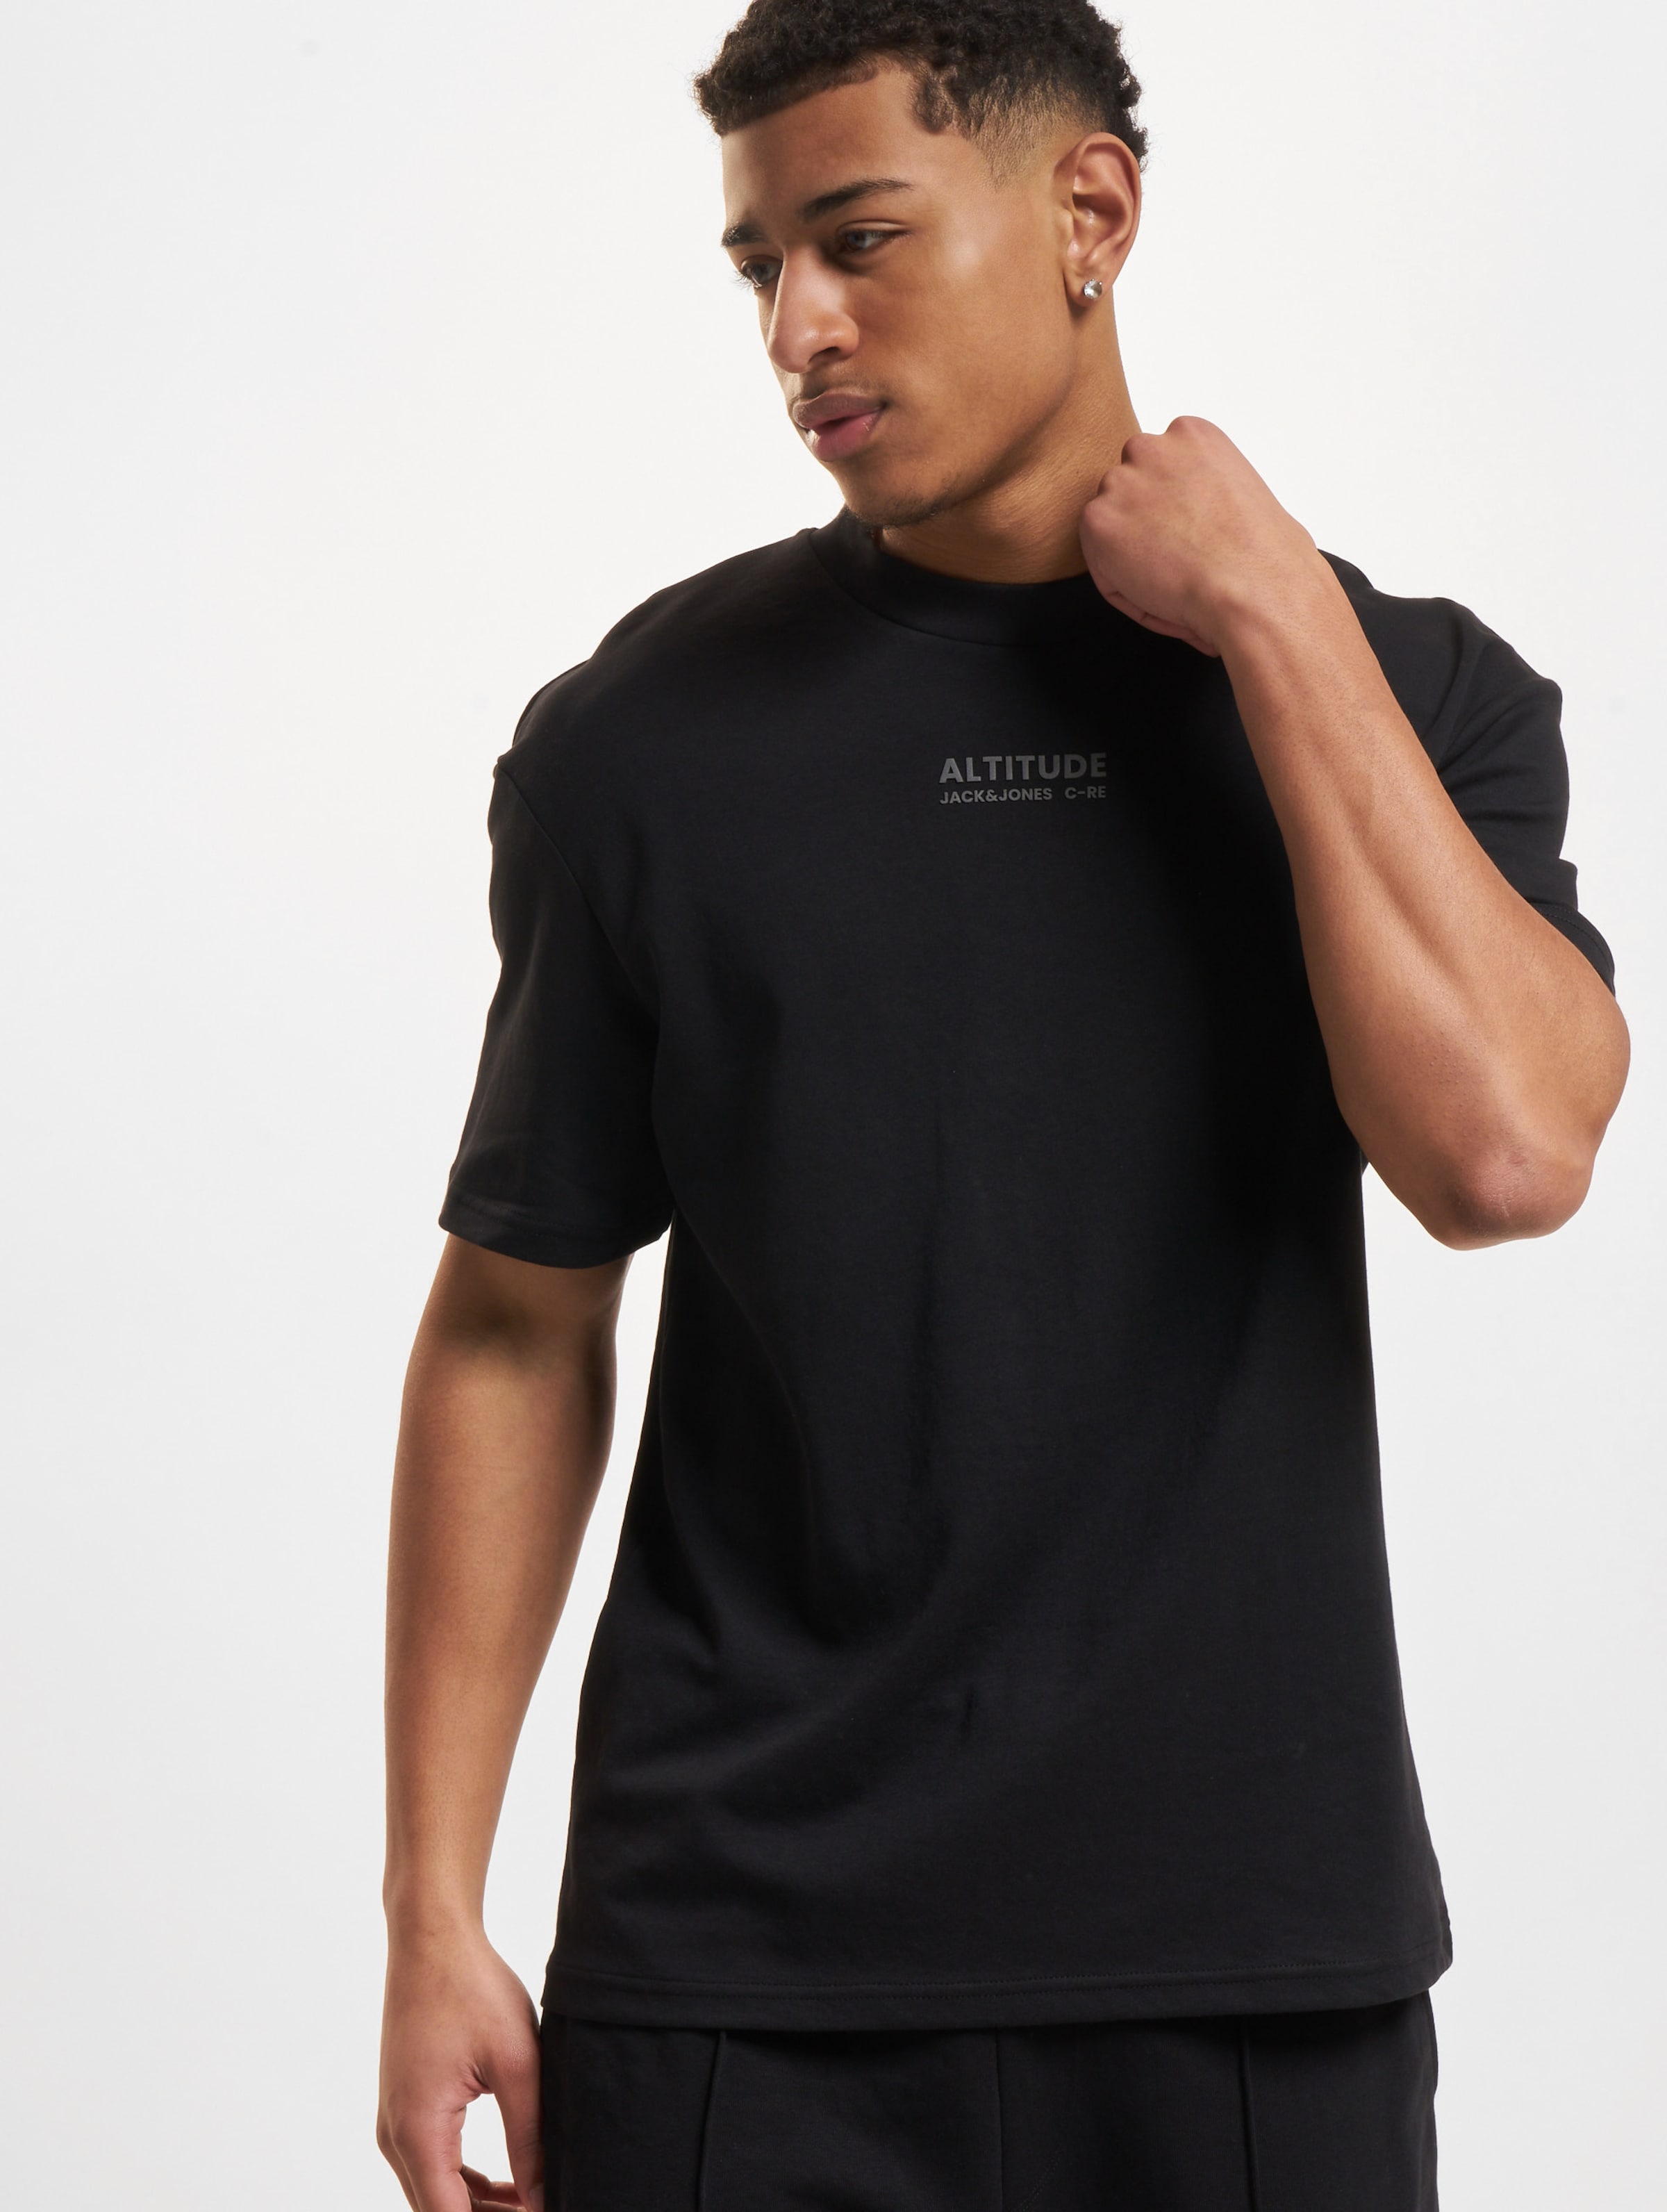 Jack & Jones Altitude Crew Neck T-Shirt Mannen,Unisex op kleur zwart, Maat M